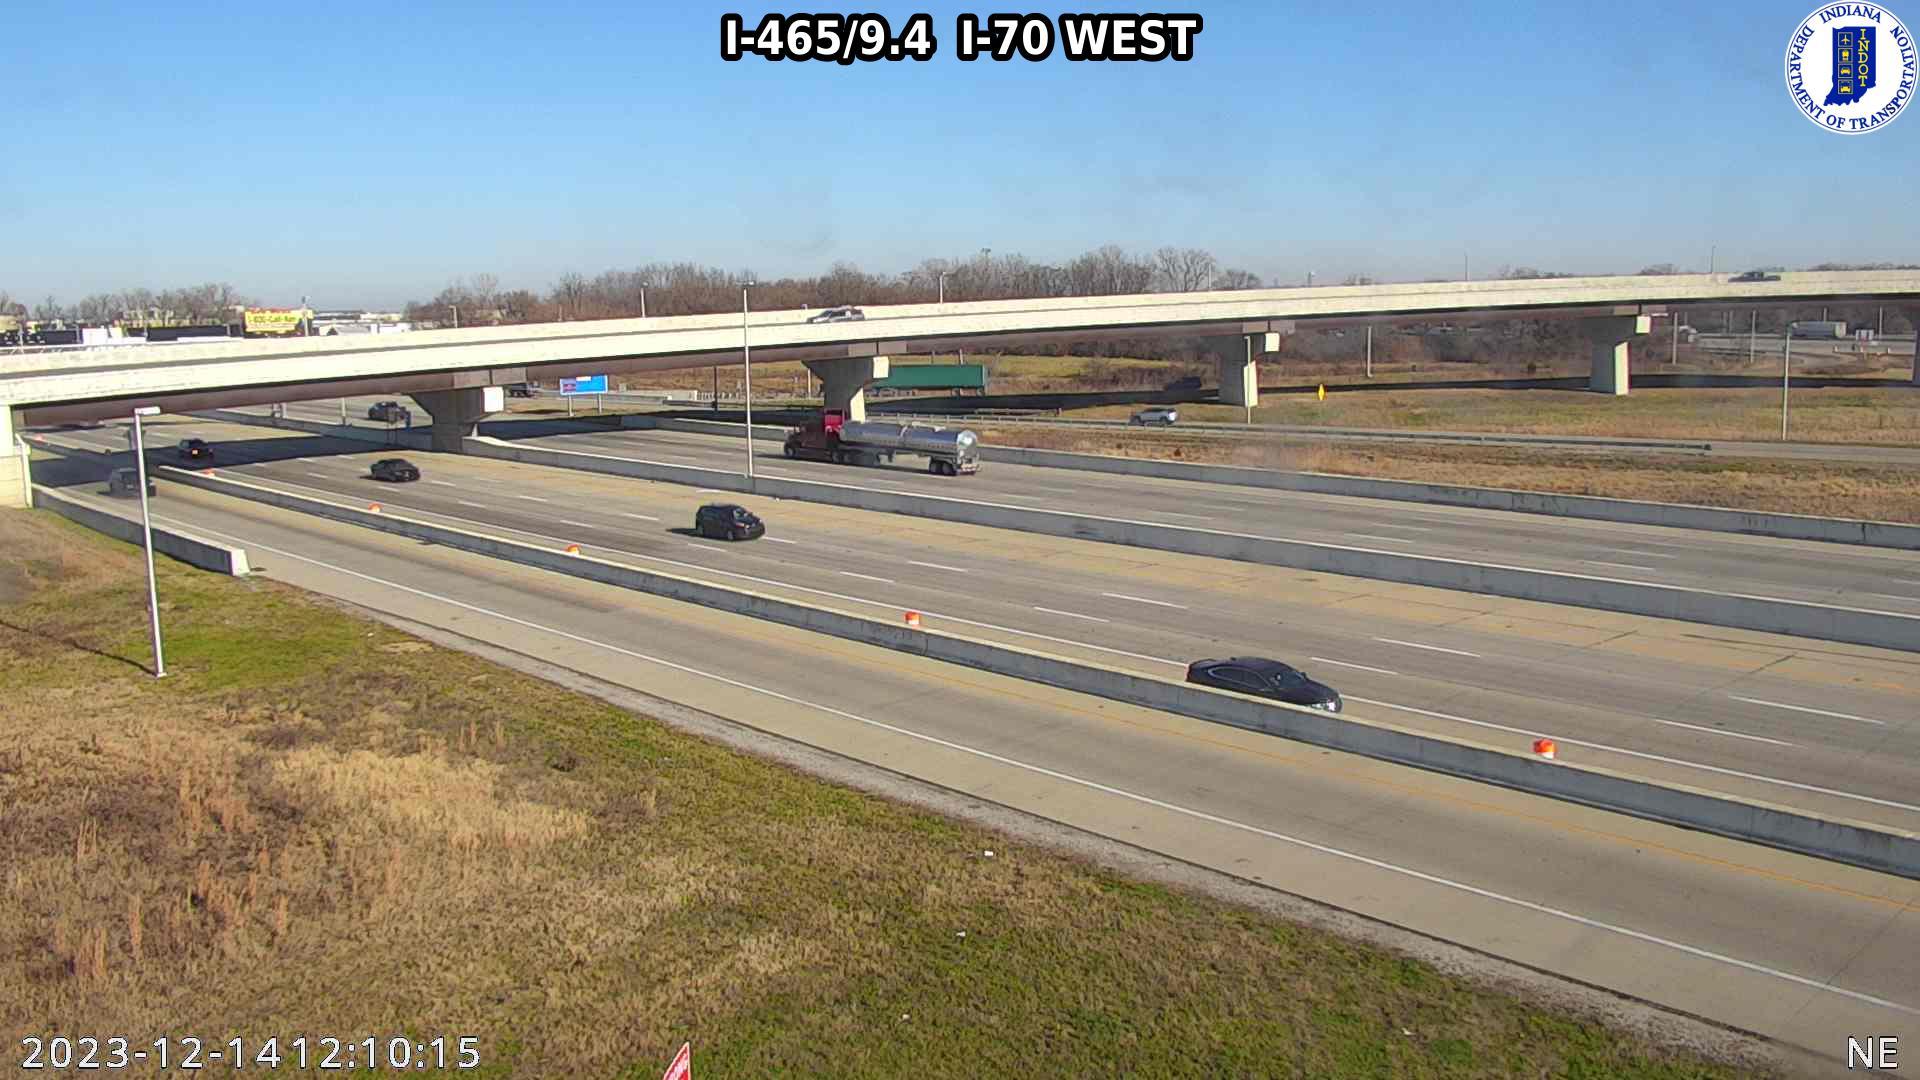 Indianapolis: I-465: I-465/9.4 I-70 WEST Traffic Camera